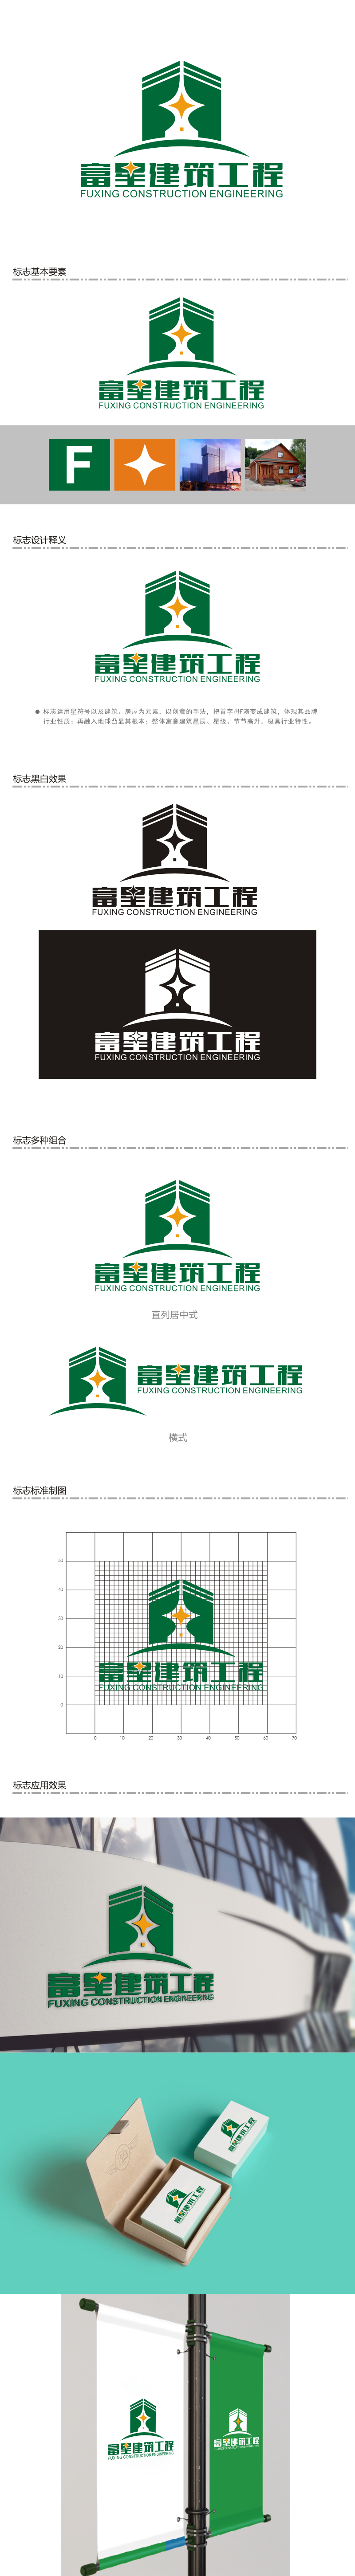 陈波的天津富星建筑工程有限公司logo设计